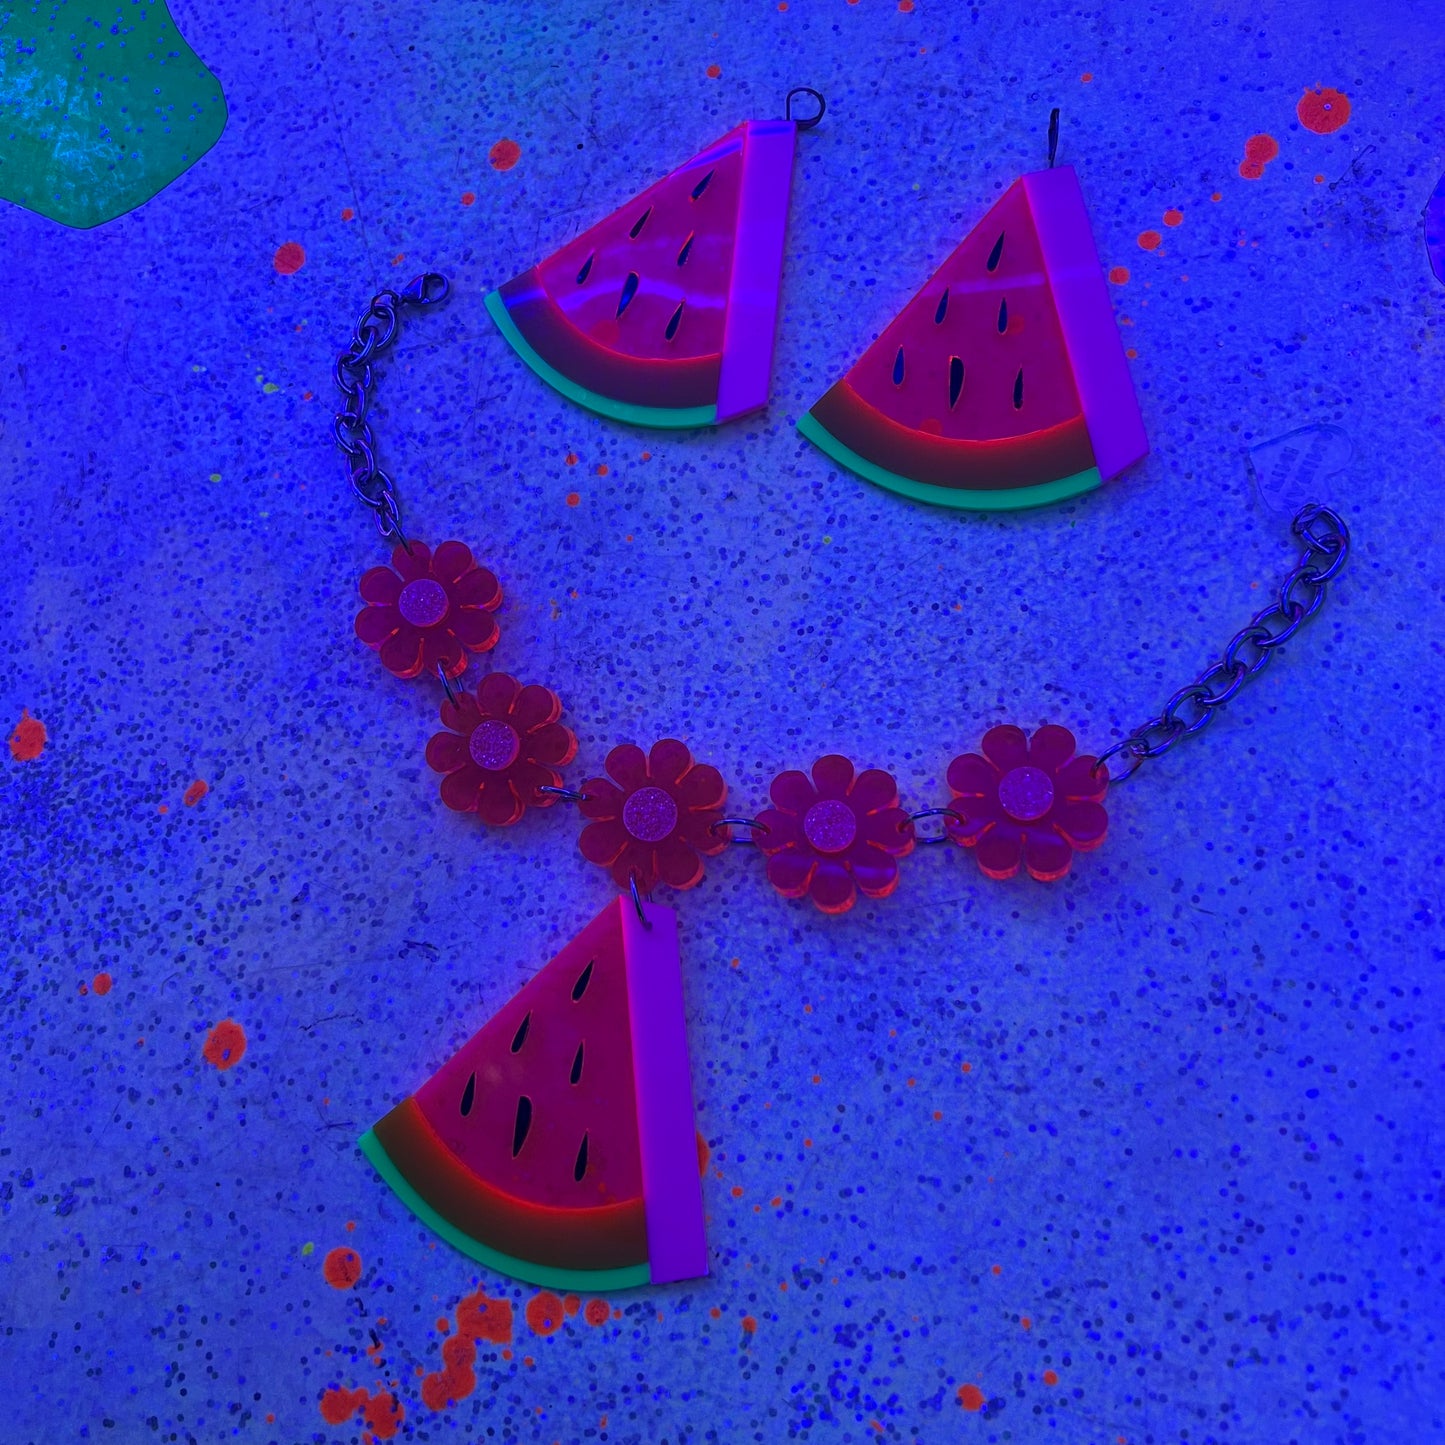 Watermelon earrings & necklace set